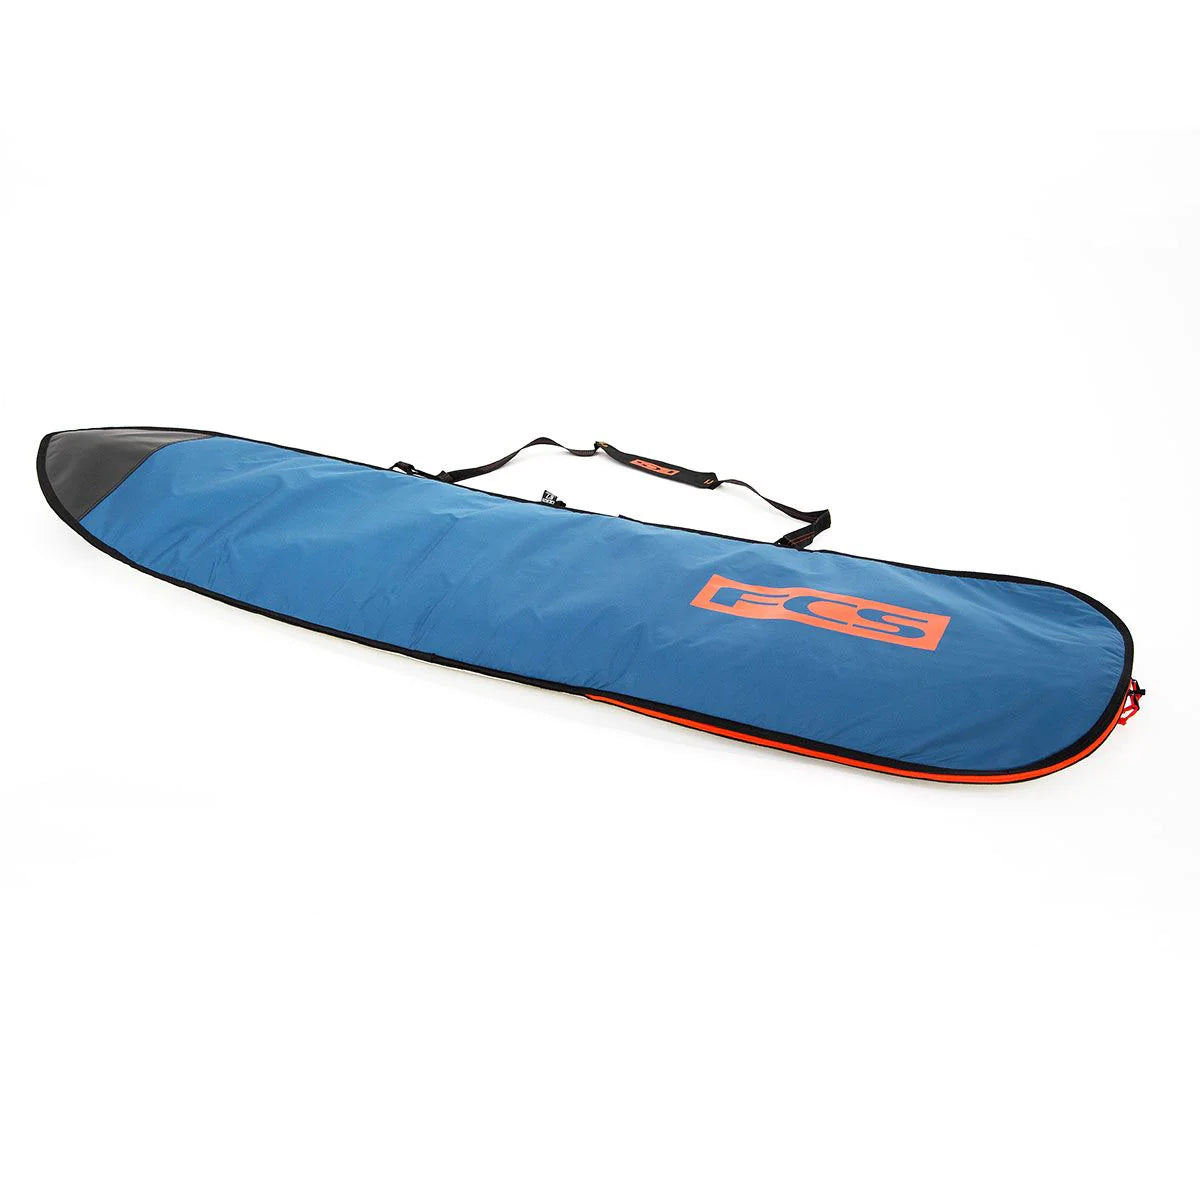 SACCA SURF 8'0" FCS Classic Fun Board Steel Blue/White